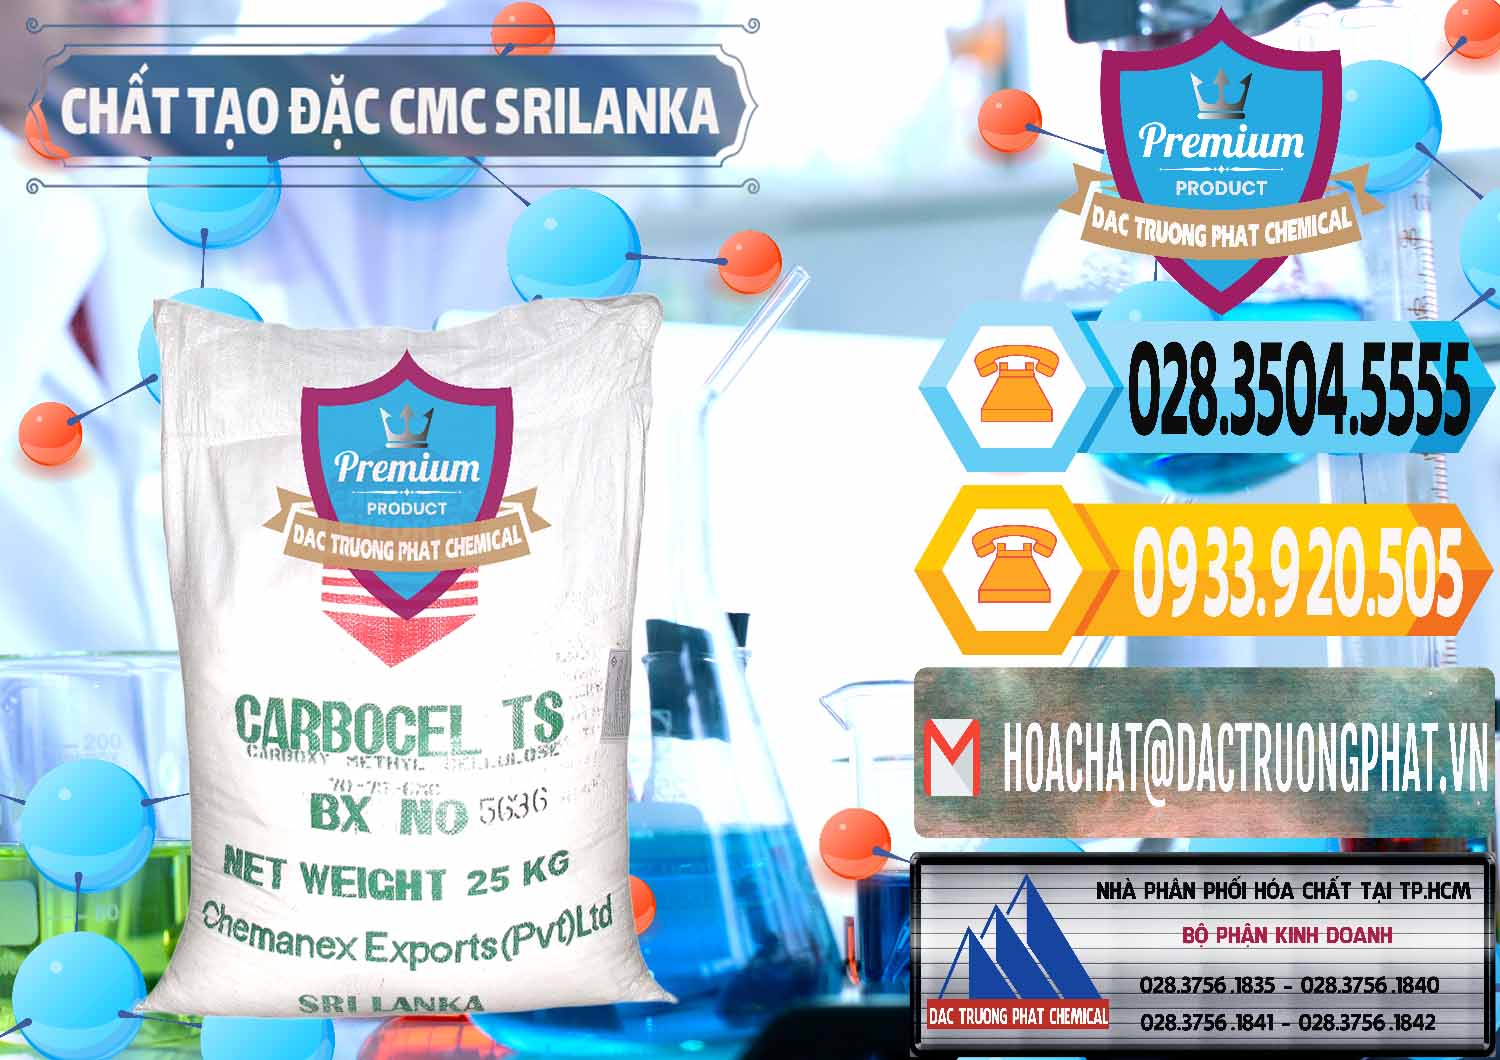 Nơi chuyên cung ứng - bán Chất Tạo Đặc CMC - Carboxyl Methyl Cellulose Srilanka - 0045 - Đơn vị chuyên nhập khẩu ( phân phối ) hóa chất tại TP.HCM - hoachattayrua.net